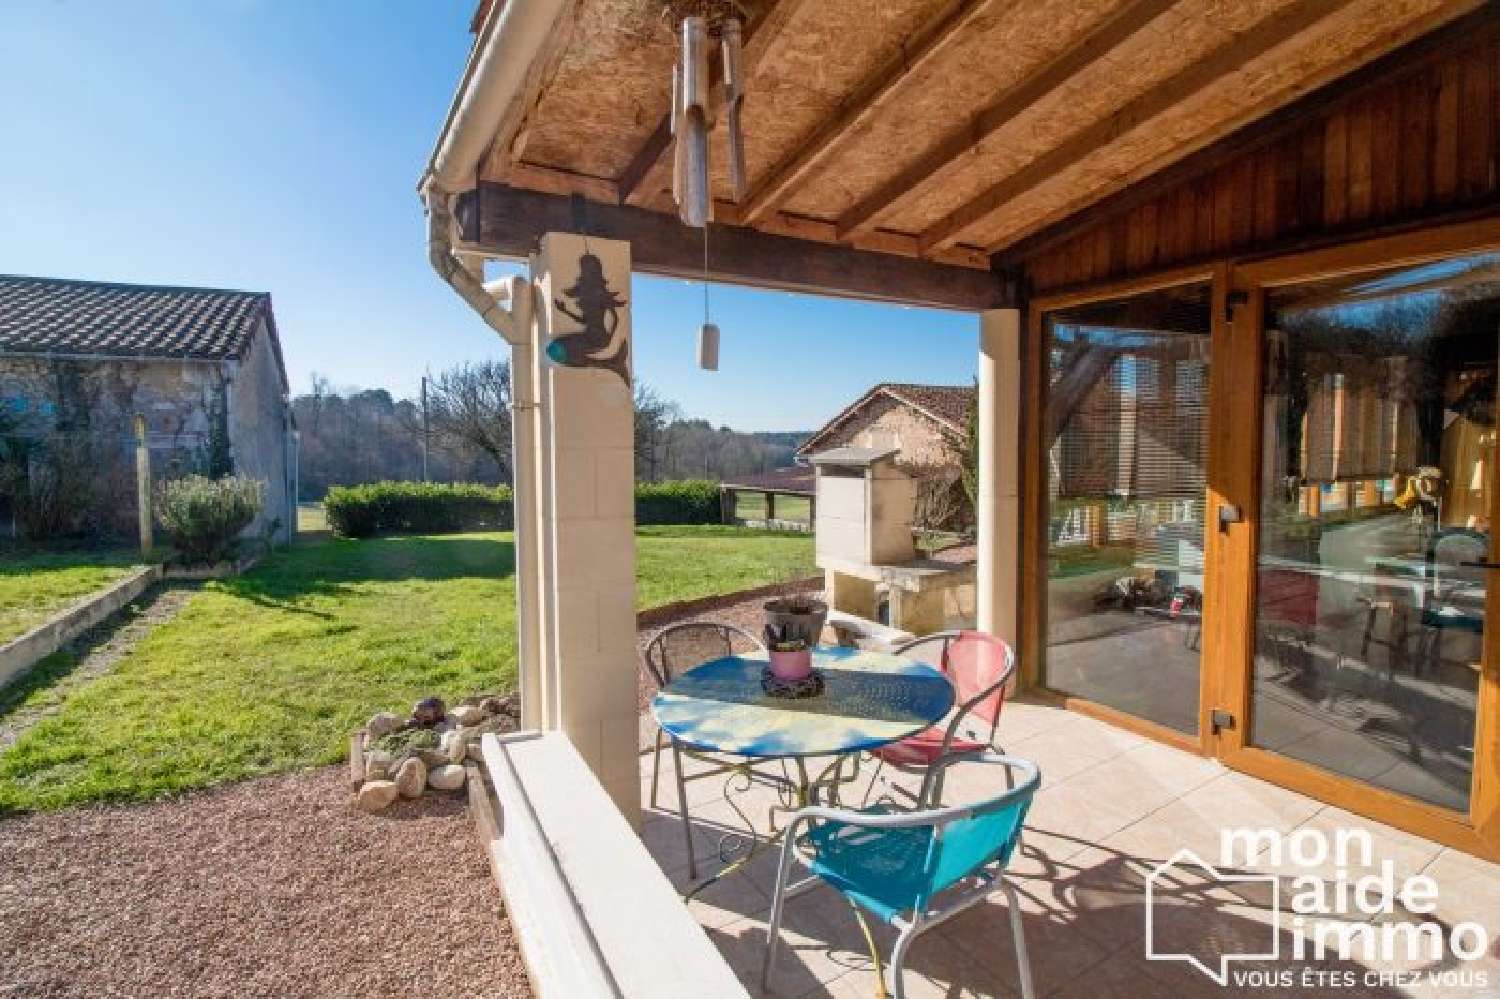  à vendre maison Ligueux Dordogne 6